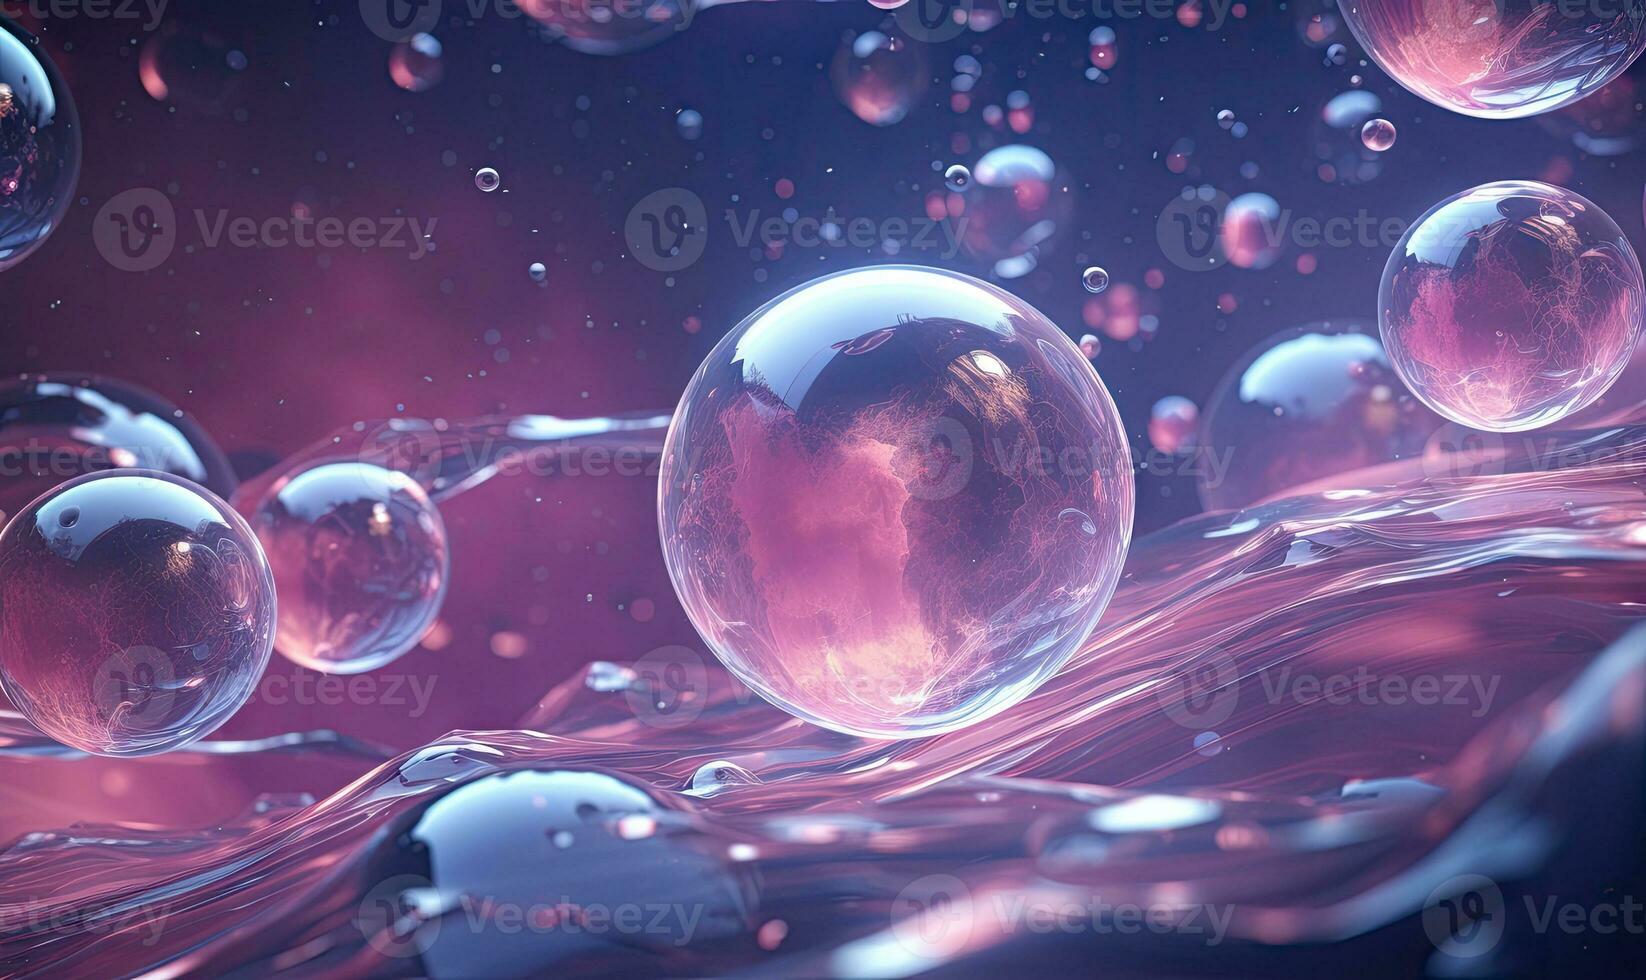 etéreo escena de agua burbujas en un oscuro fondo. creado por ai foto